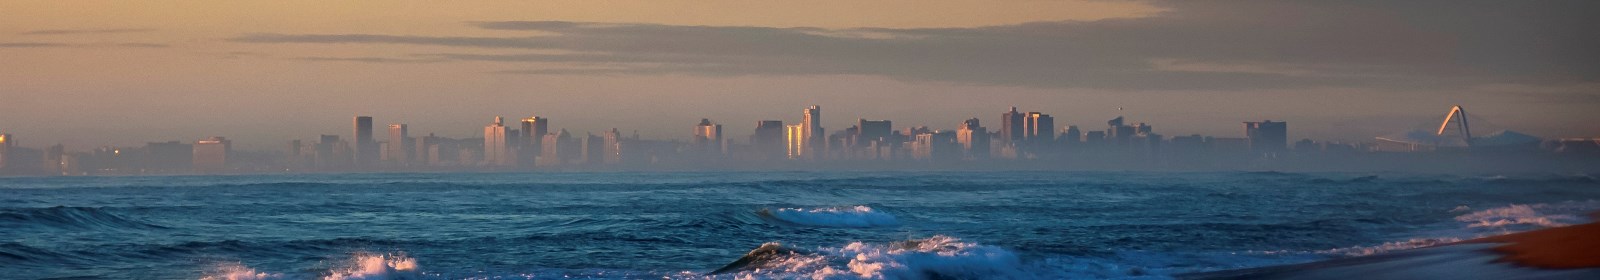  Durban’s top tourist spots